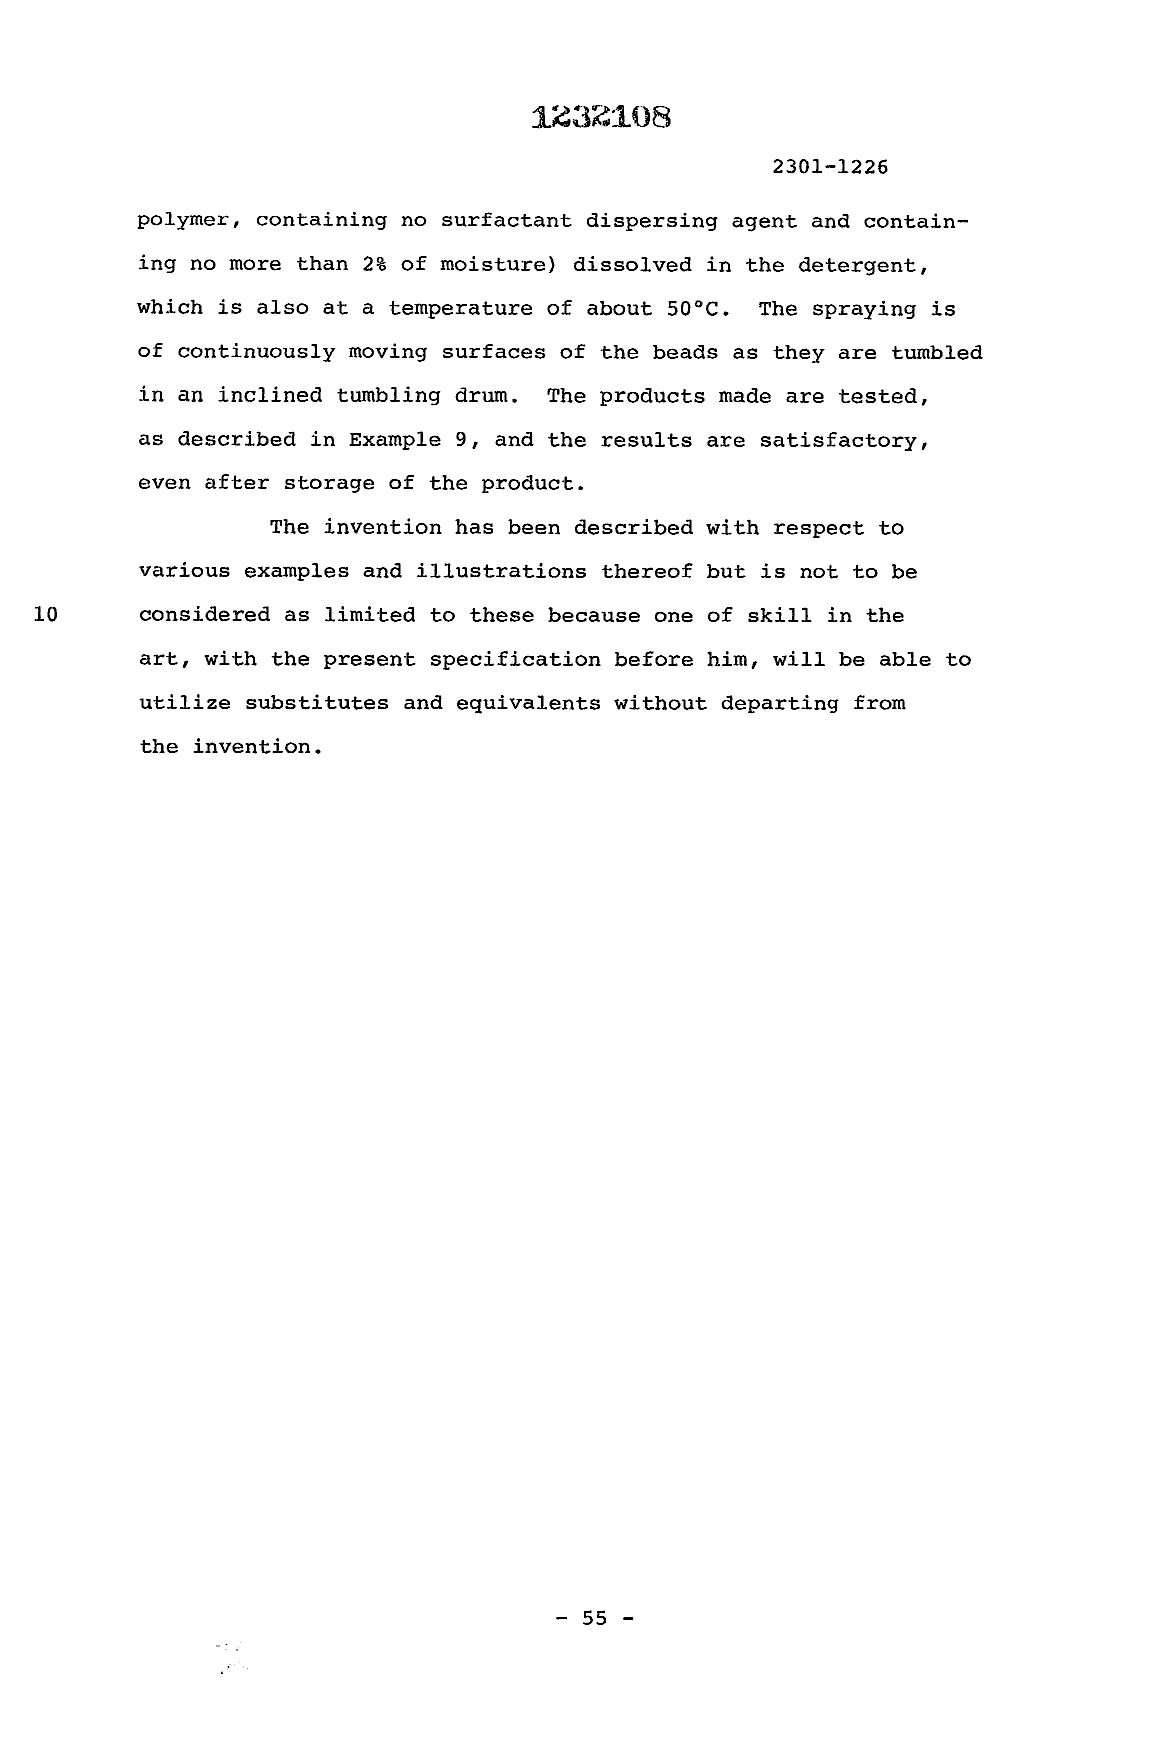 Canadian Patent Document 1232108. Description 19930730. Image 56 of 56